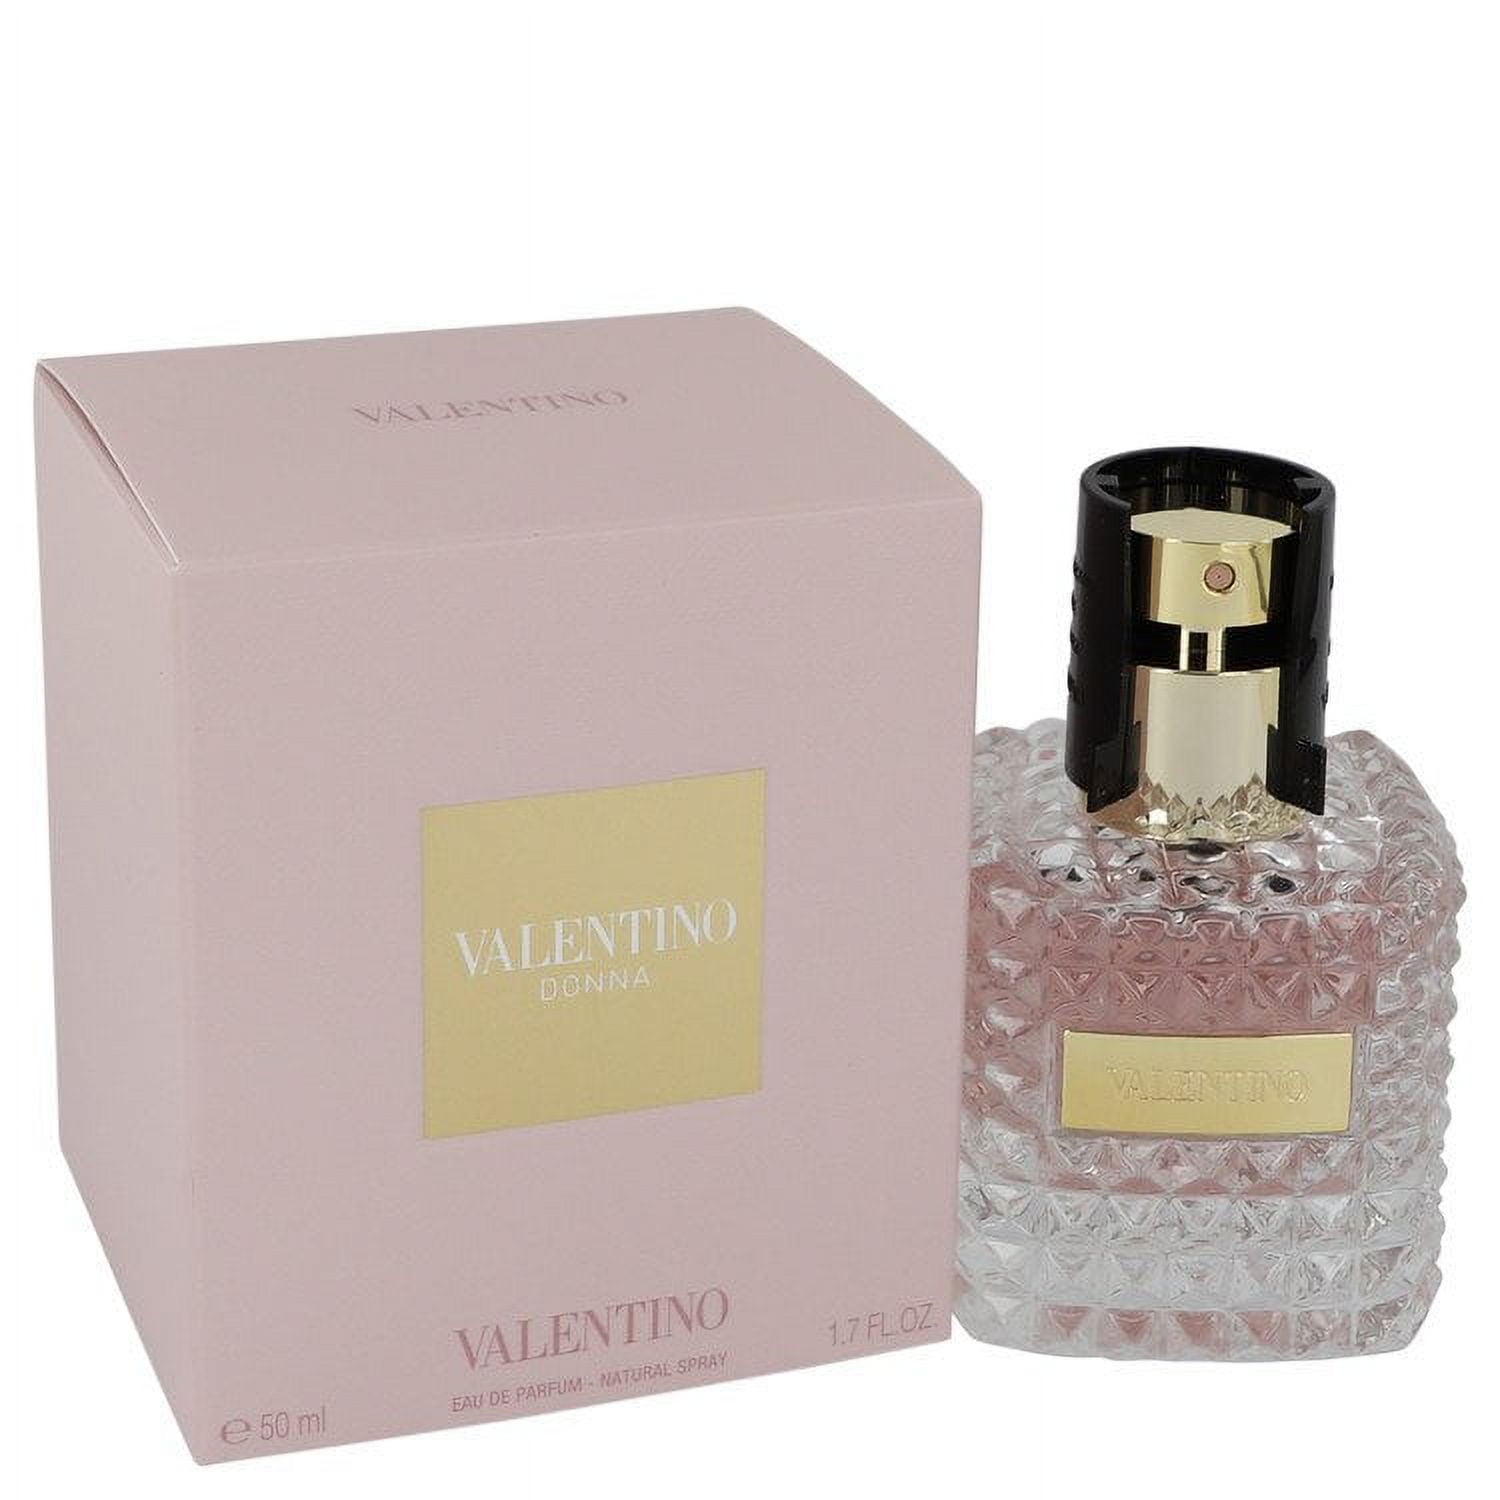 Valentino Donna by Valentino Eau De Parfum Spray 1.7 oz for Female